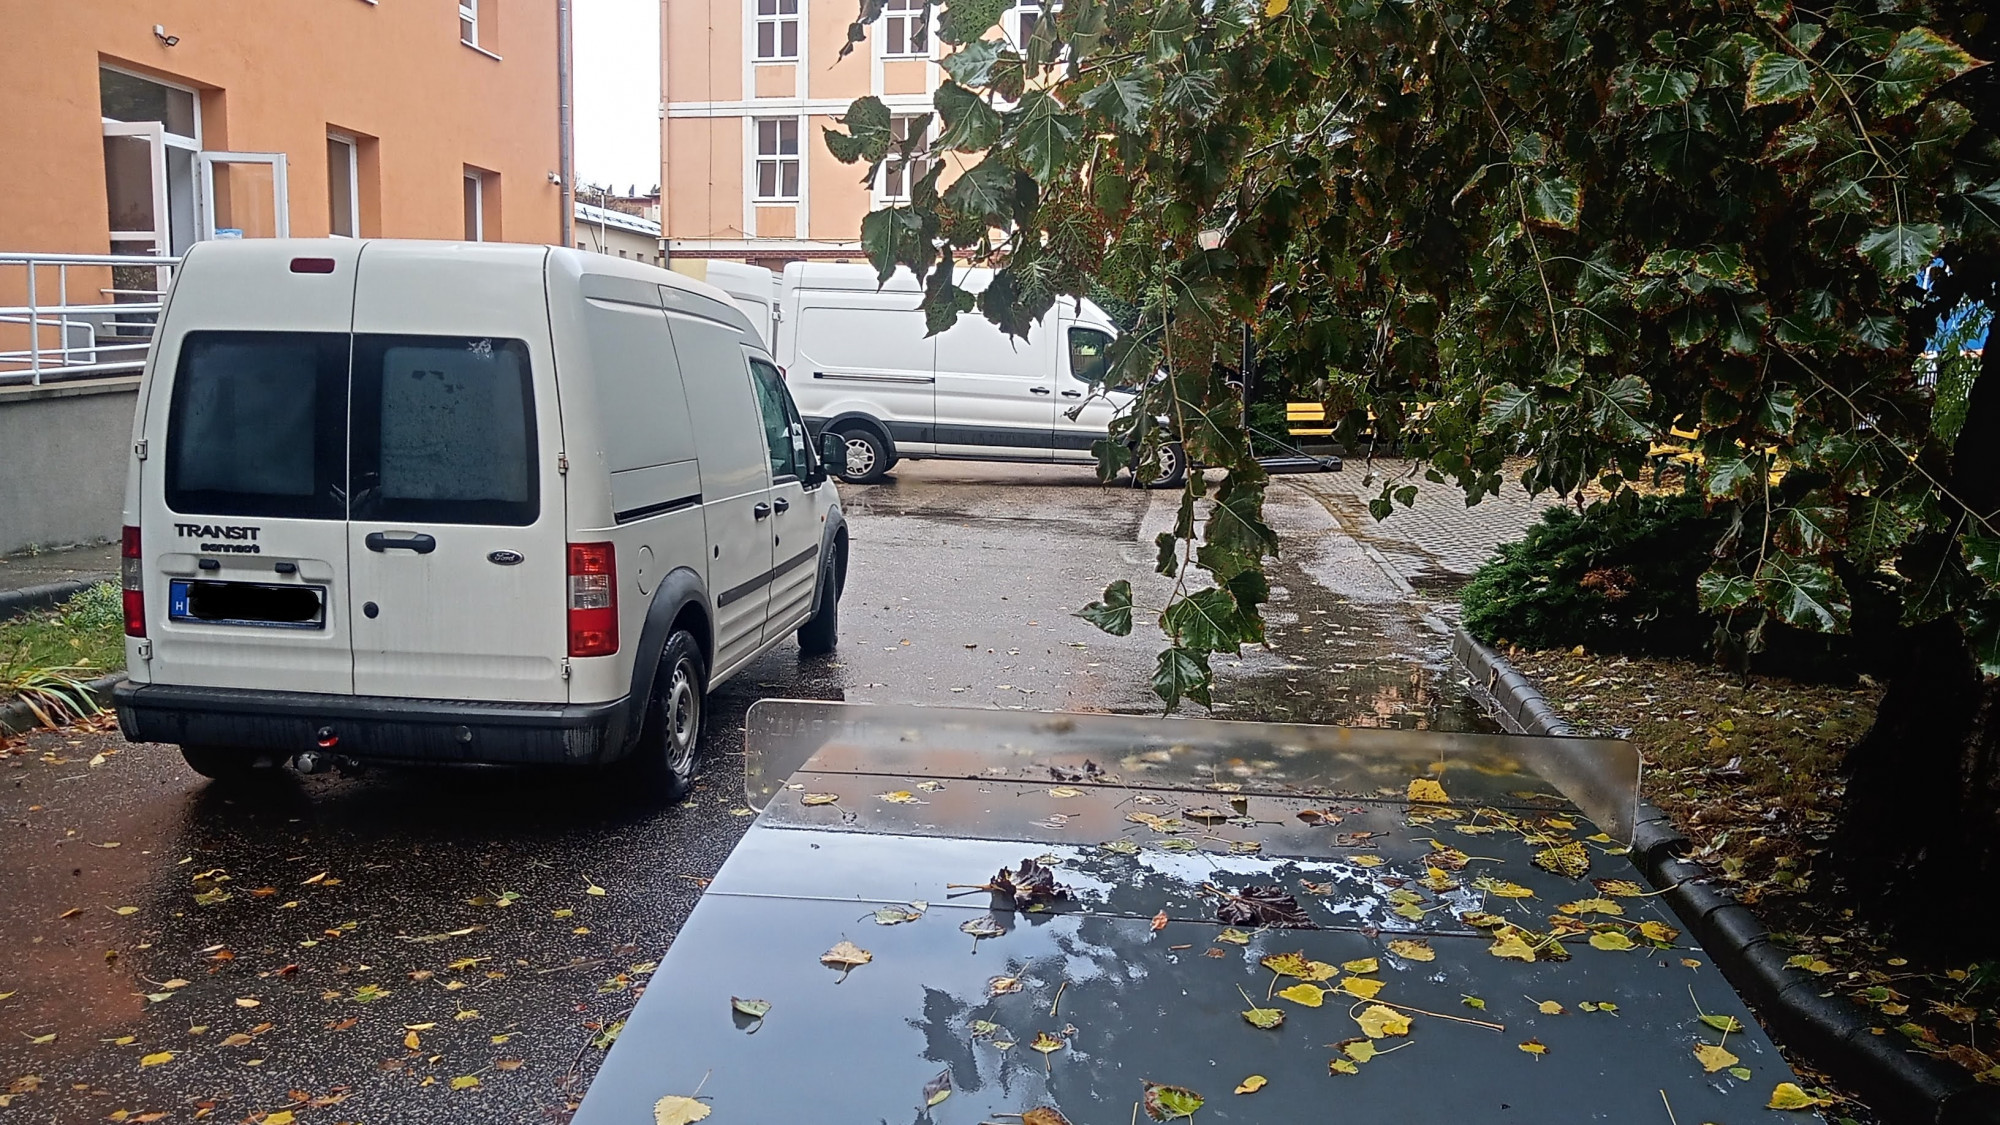 Bezárt a Kodolányi egyetem fővárosi épülete, valahová elköltöznek